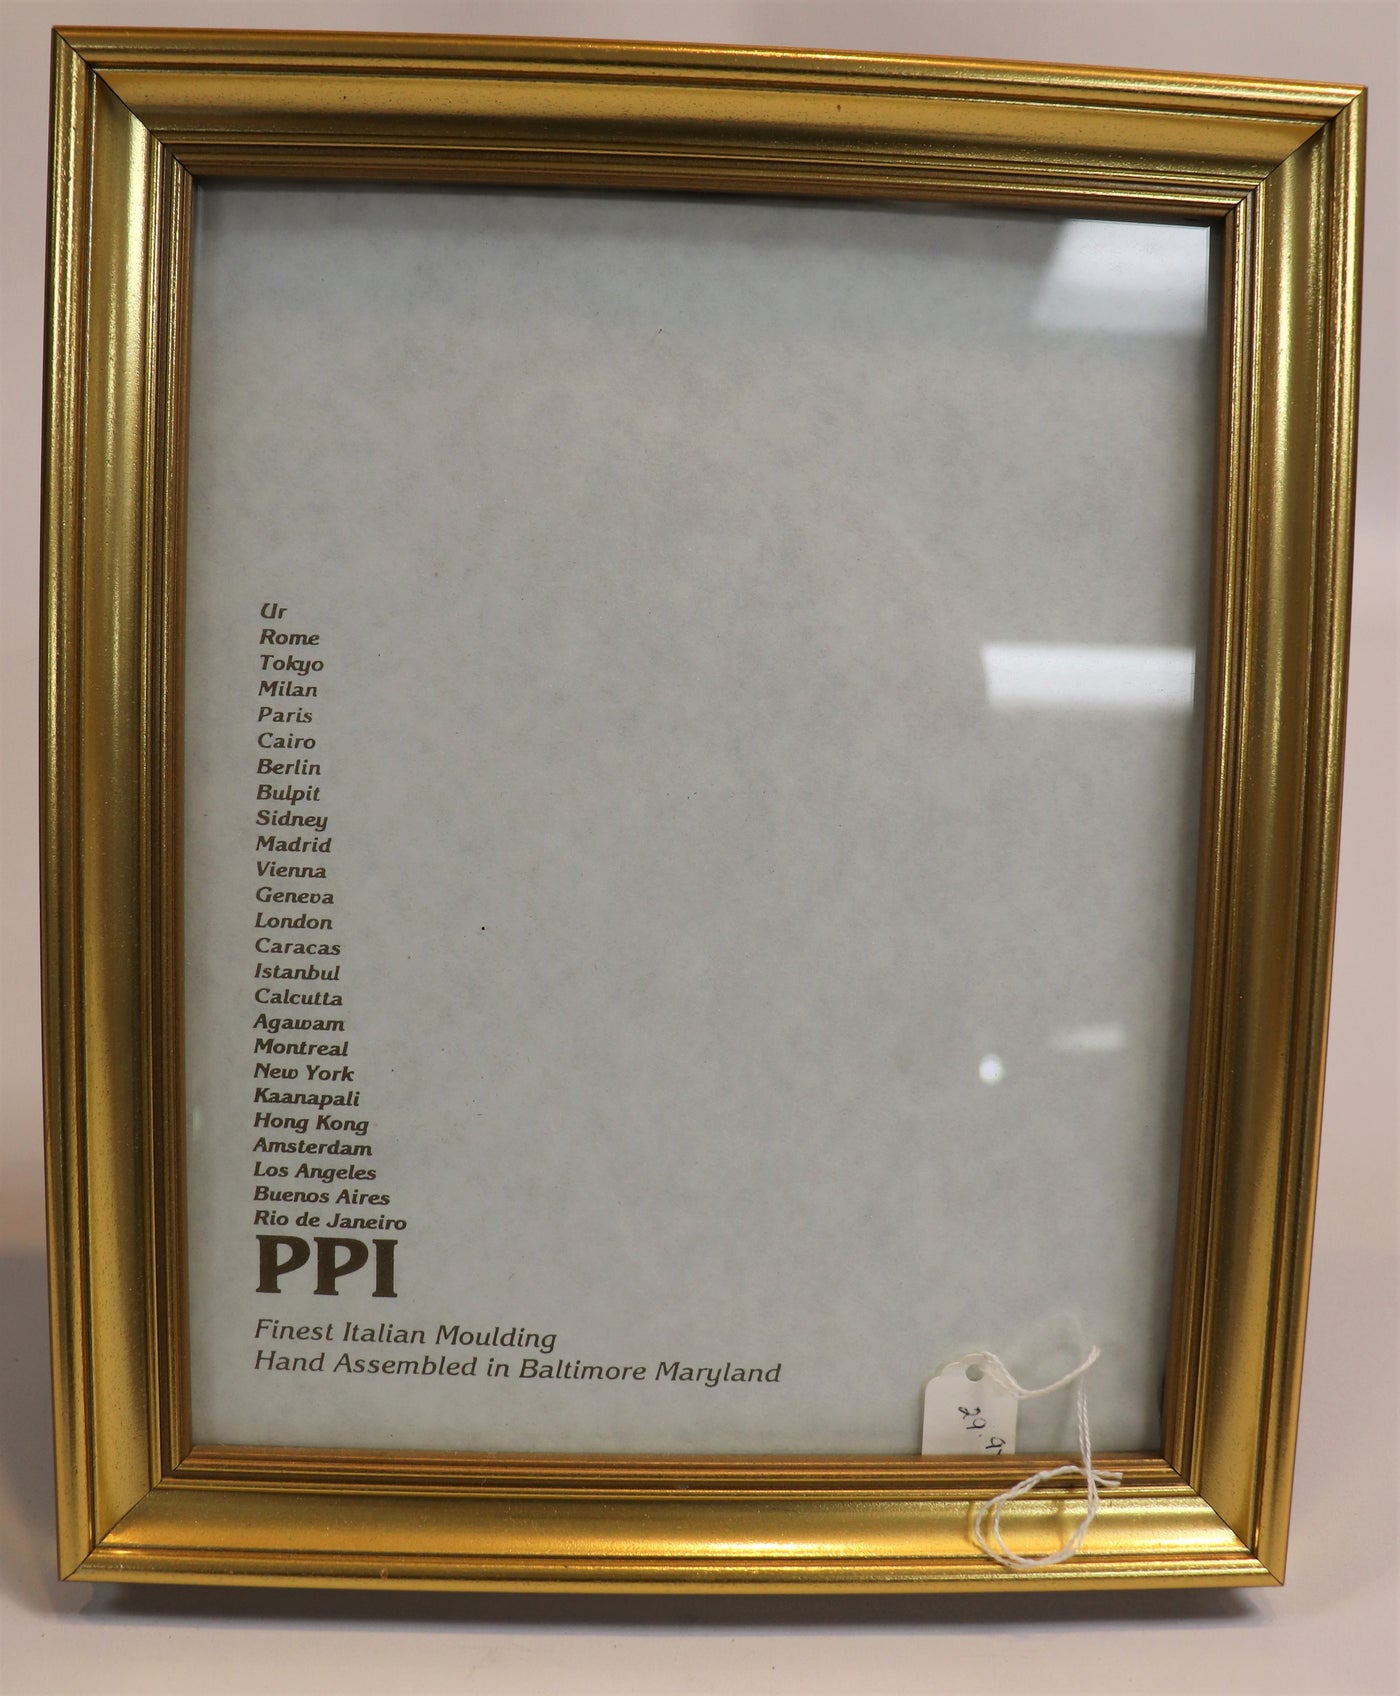 8" x 10" Gold Photo frame- PPI